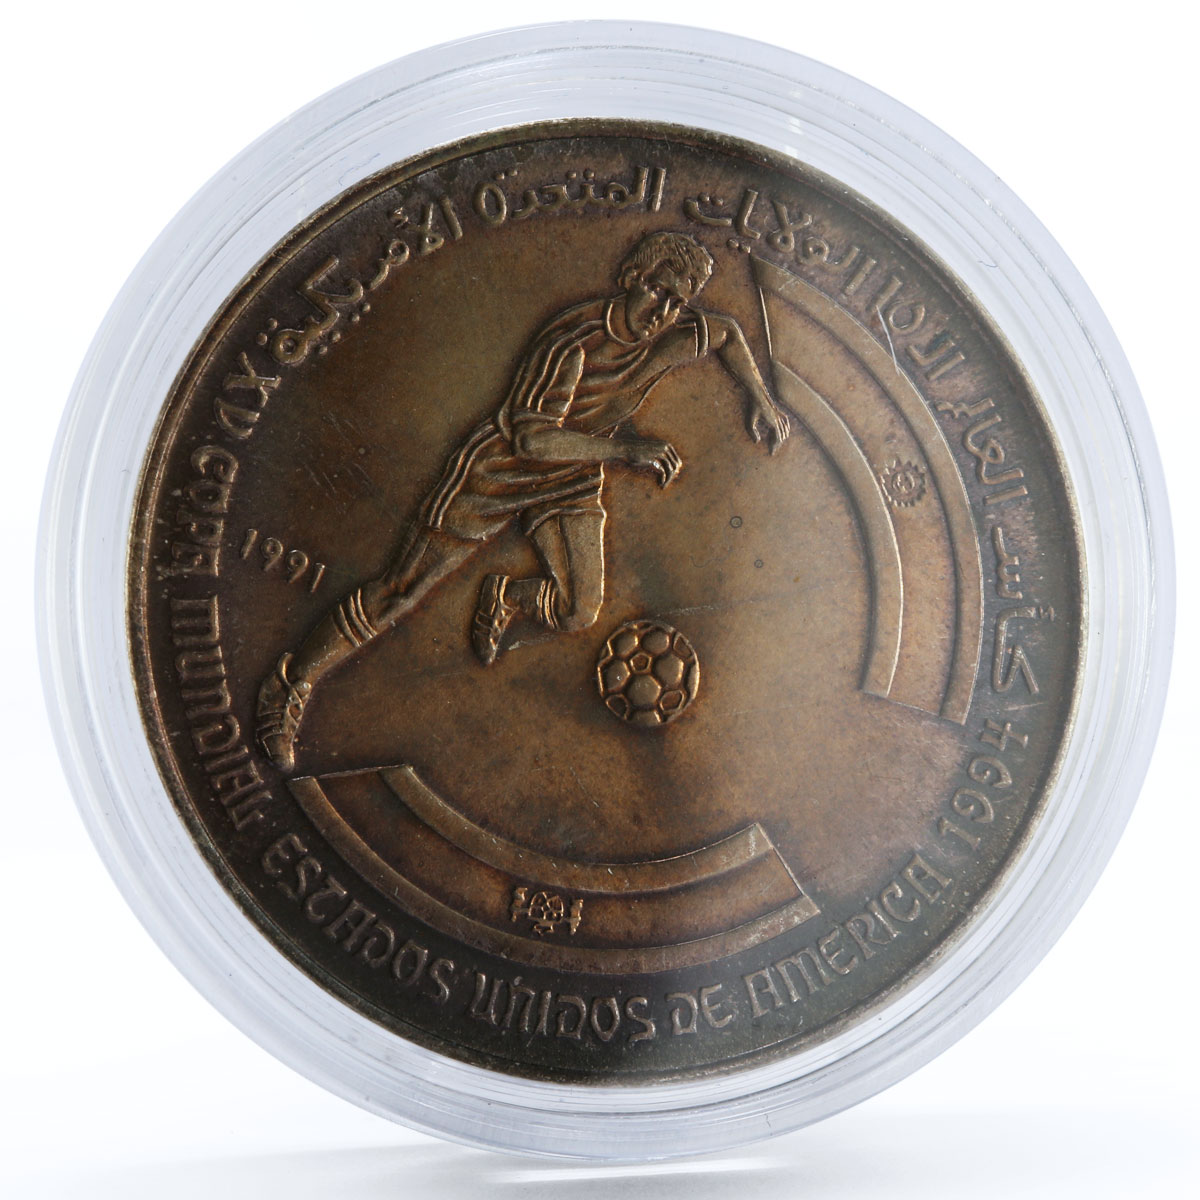 Sahrawi 500 pesetas Football World Cup in the USA silver coin 1991